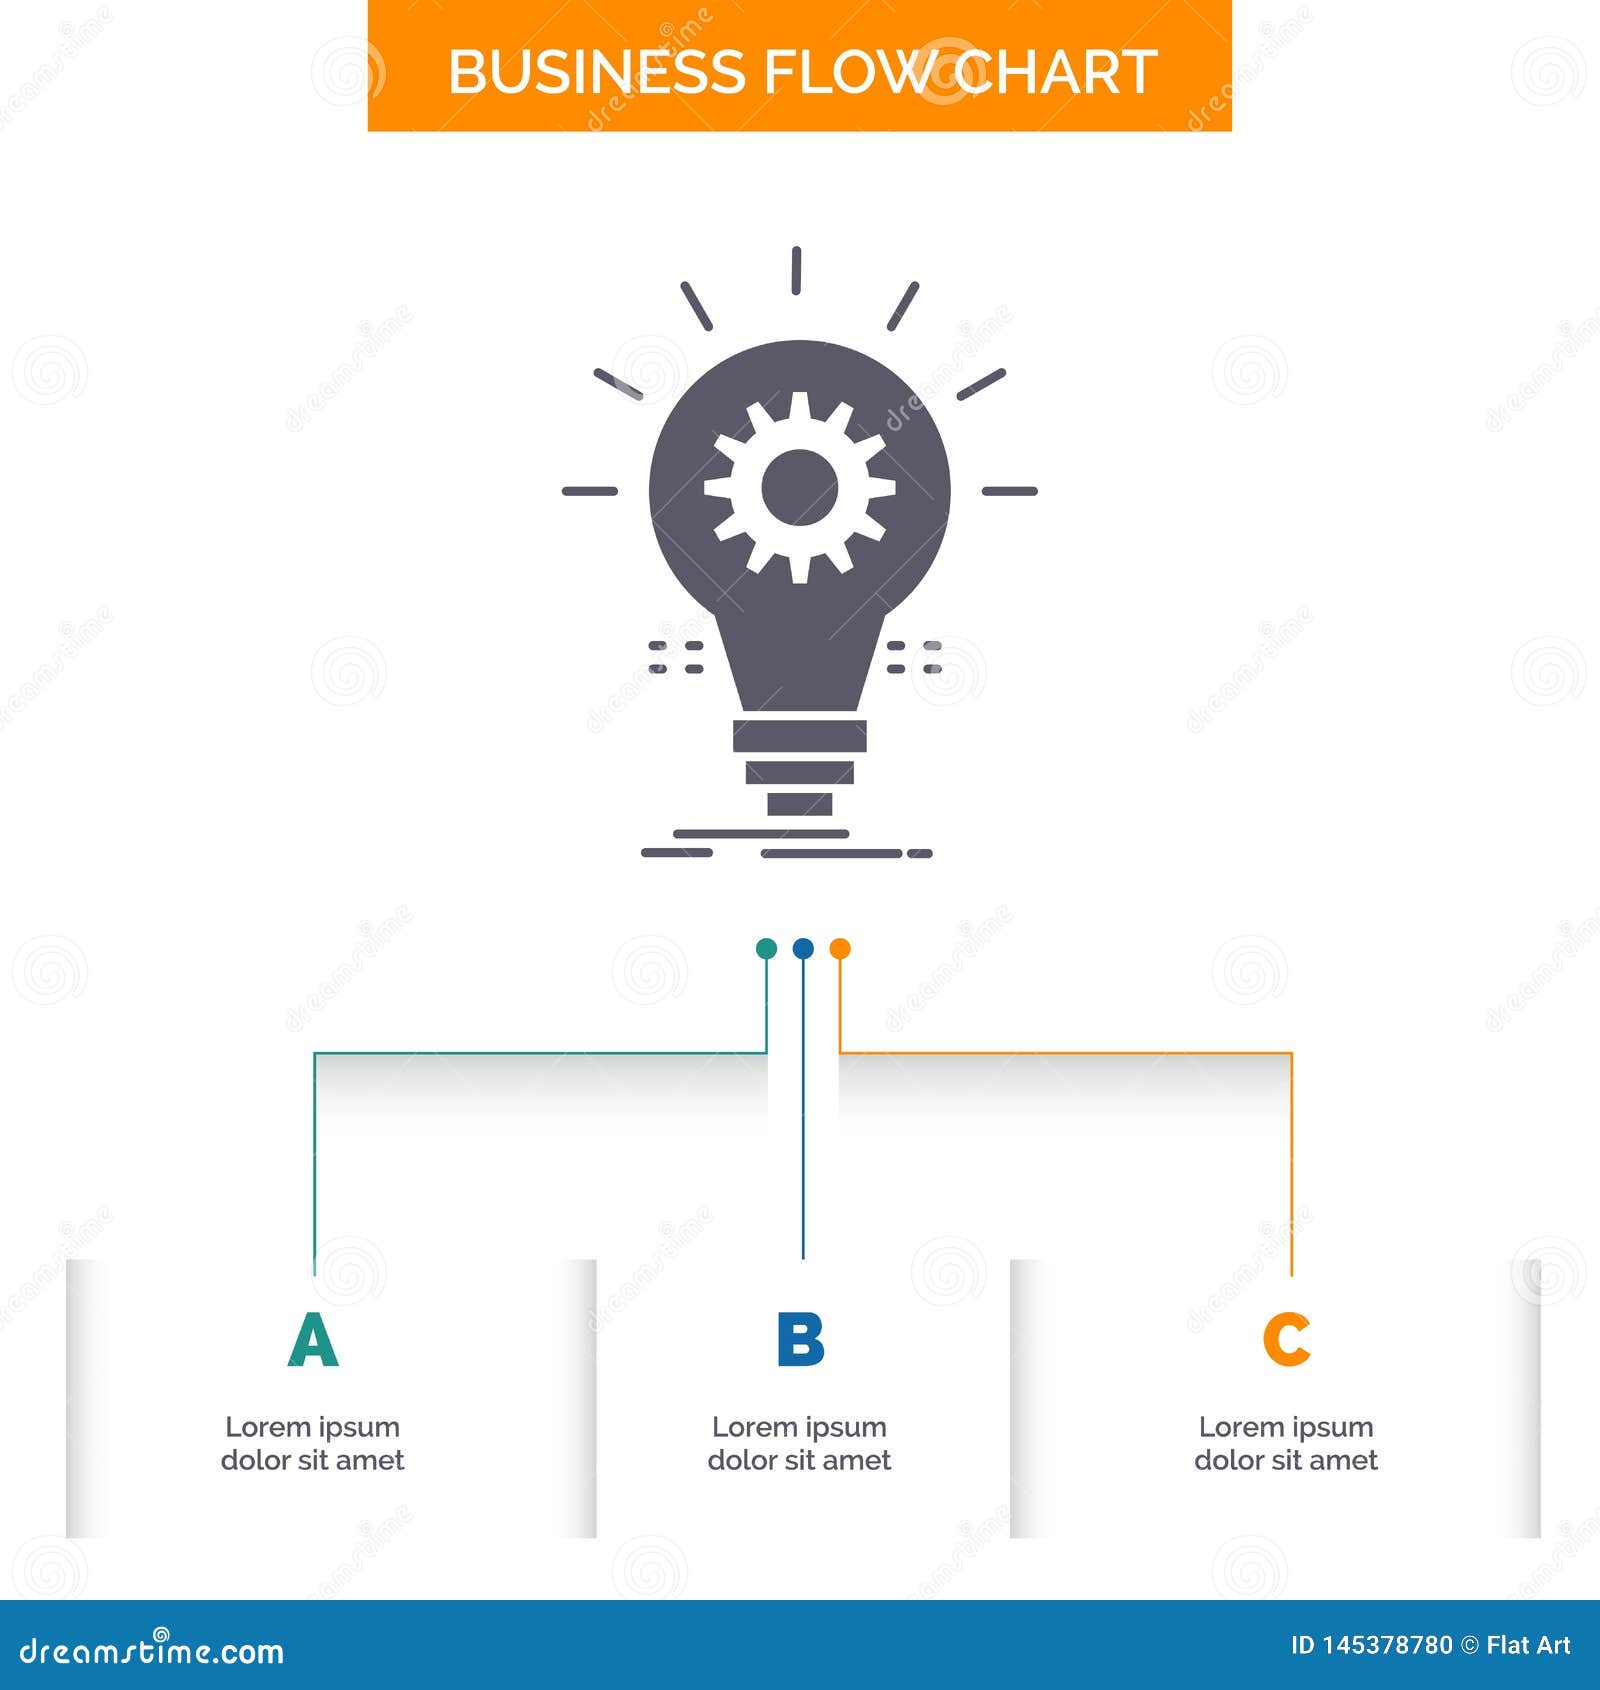 Flow Chart Design Inspiration